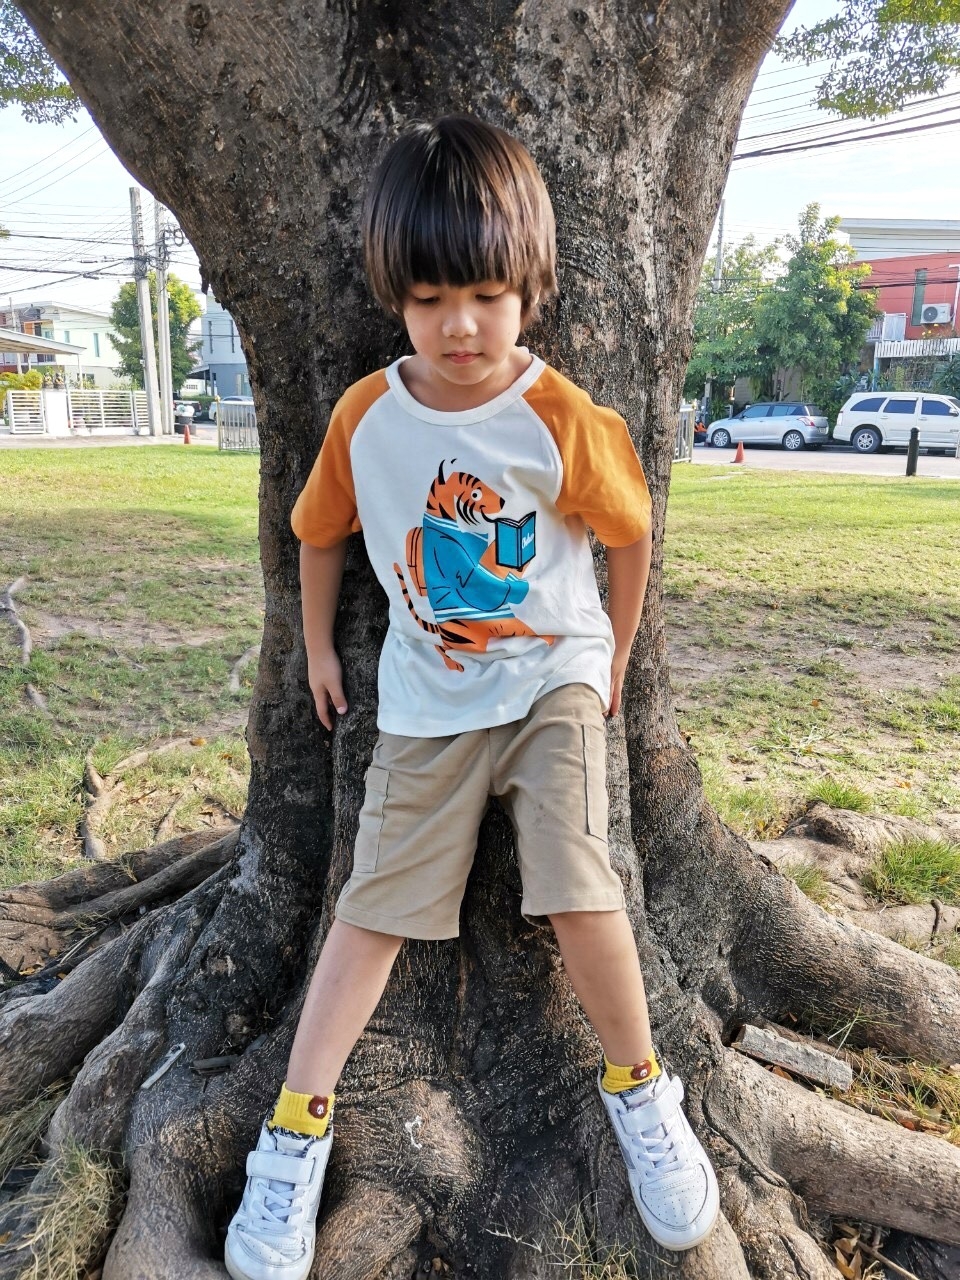 Chelsee กางเกงขาสั้นเด็กผู้ชาย เอวยางยืด มีกระเป๋าข้าง ผ้า cotton 100% ผ้านุ่ม ราคาสบายกระเป๋า งานห้างมาตรฐานการผลิตในไทย